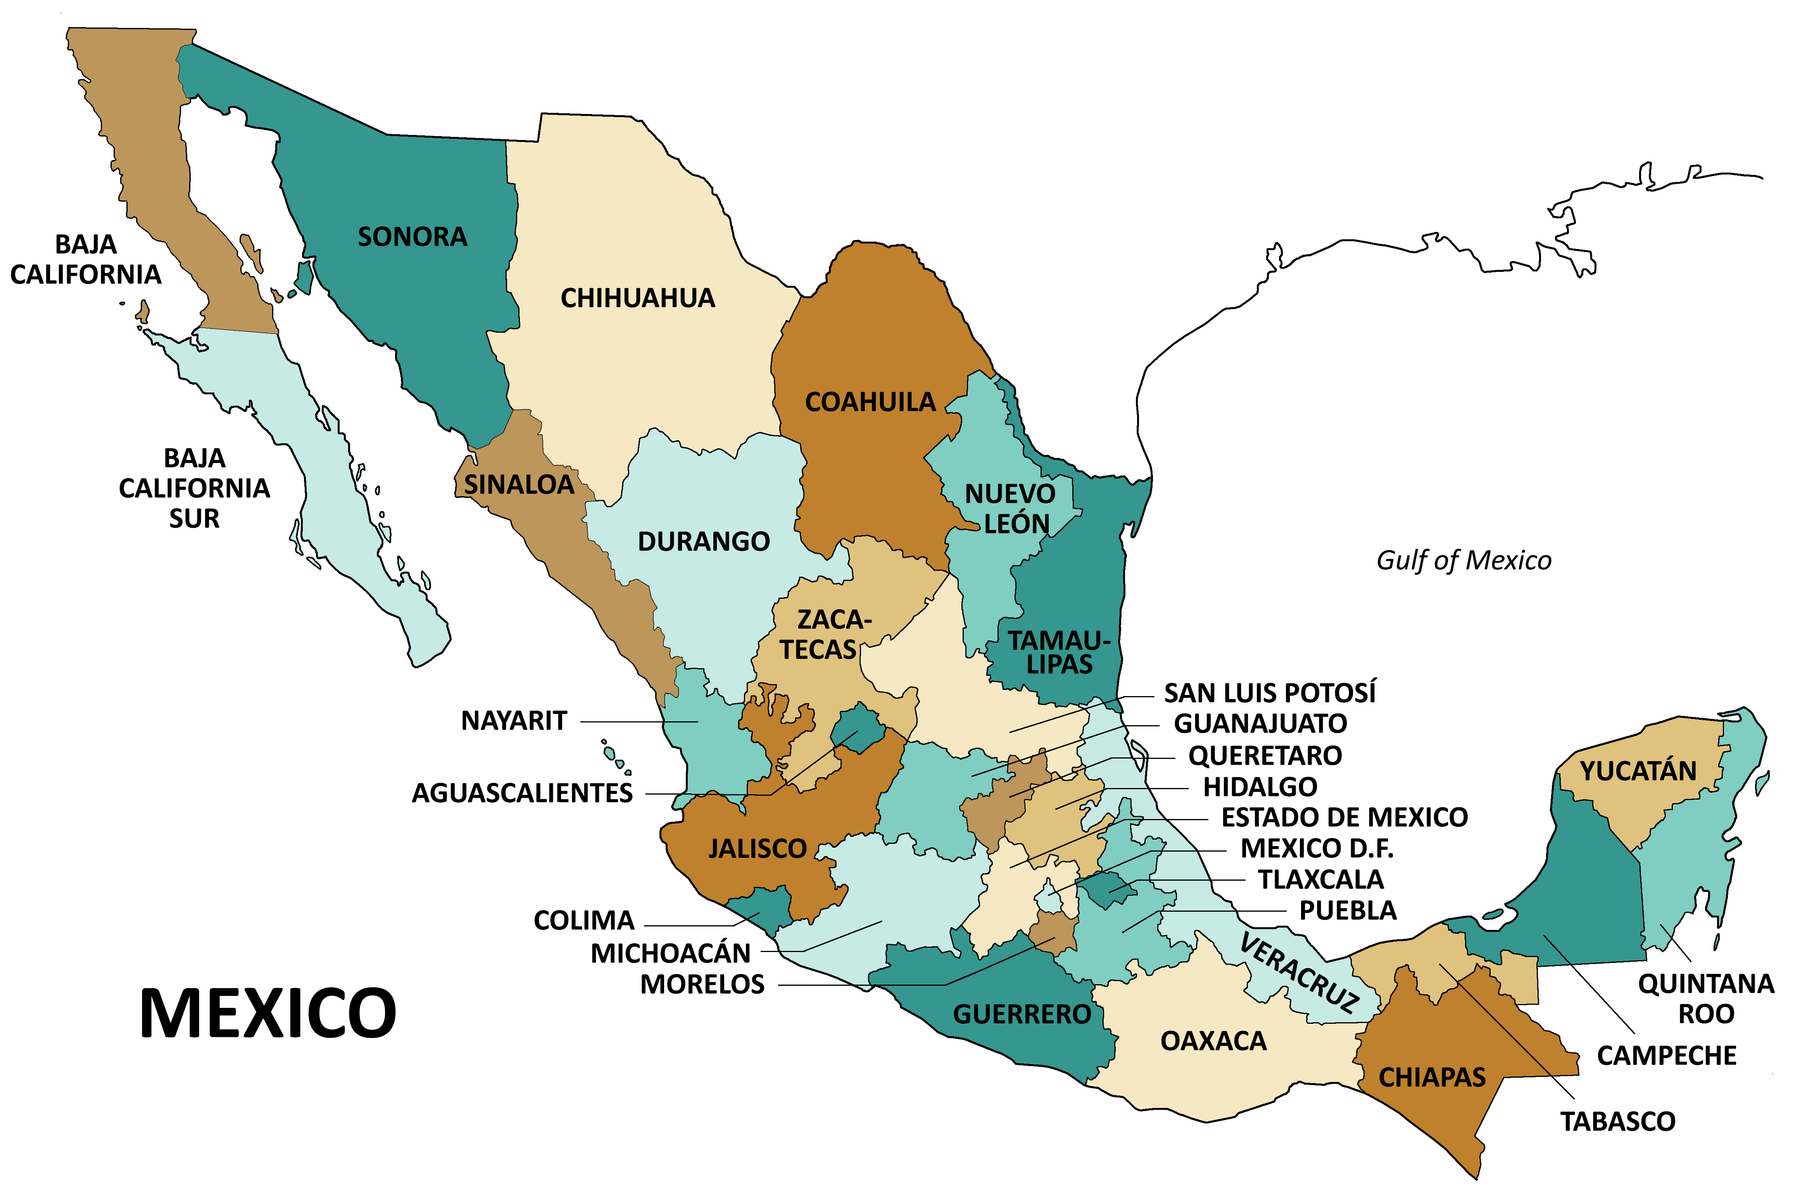 Ancihuacuaro michoacan mexico